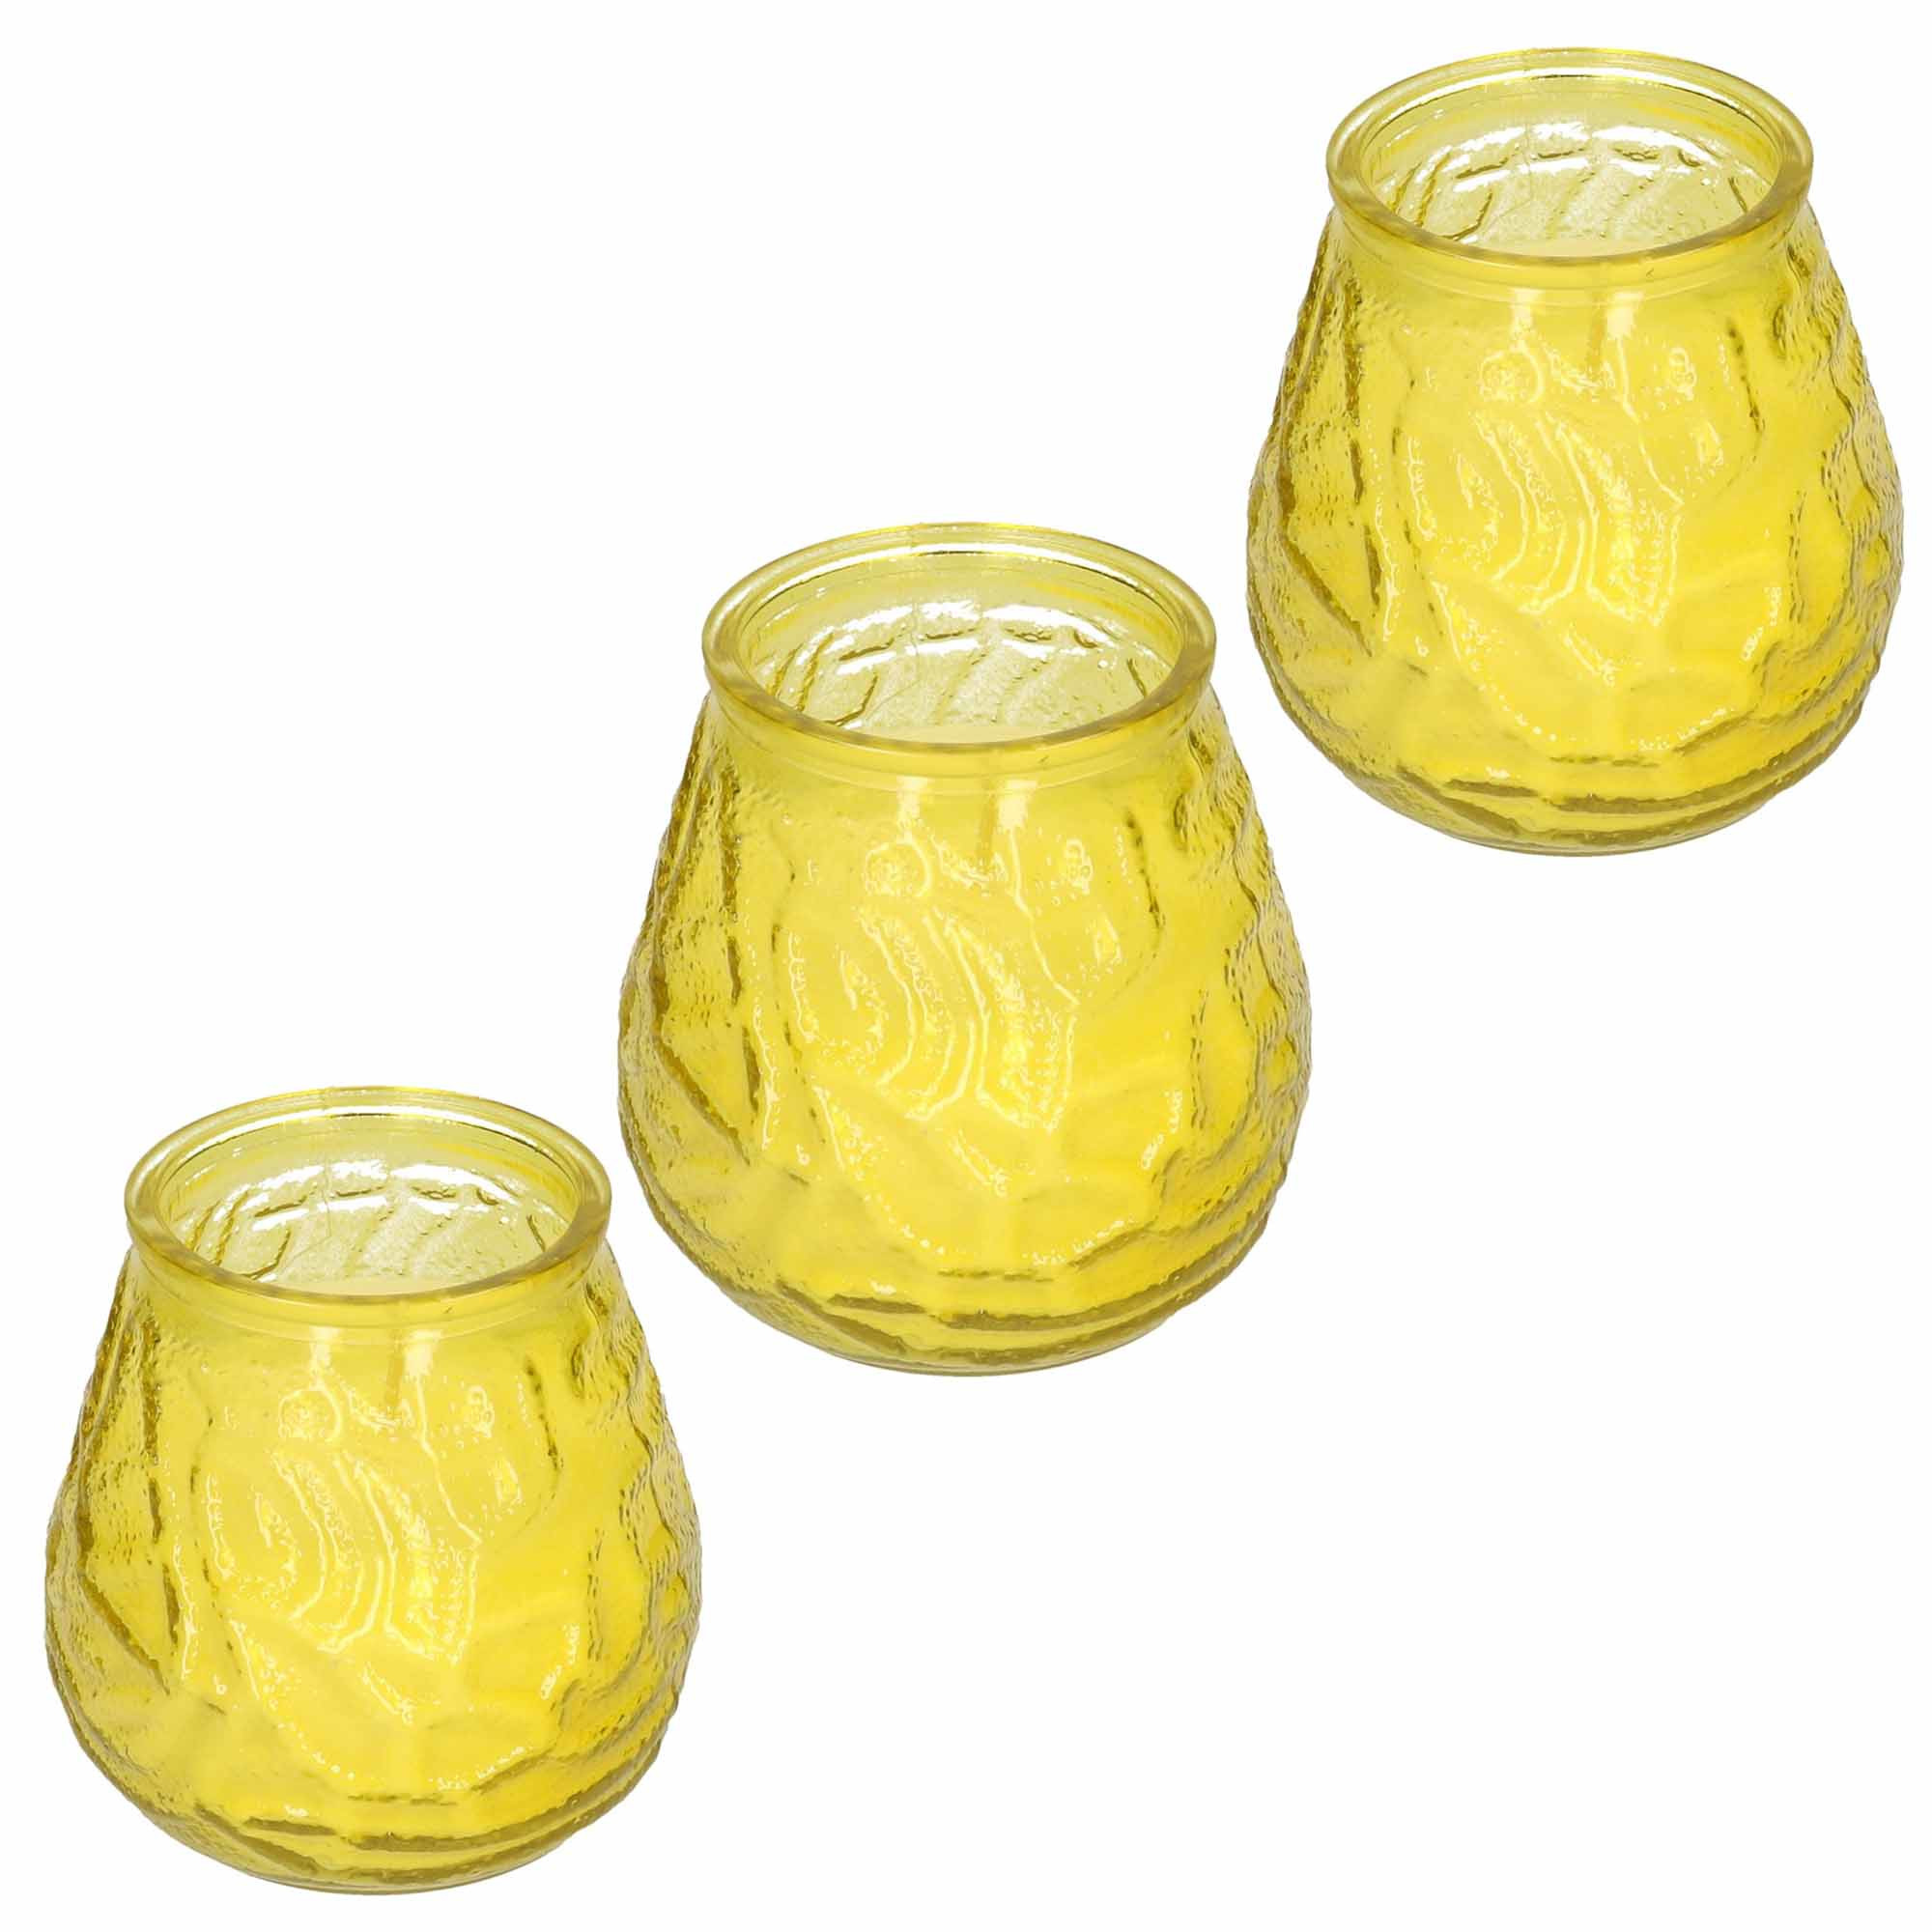 Windlicht geurkaars - 3x - geel glas - 48 branduren - citrusgeur